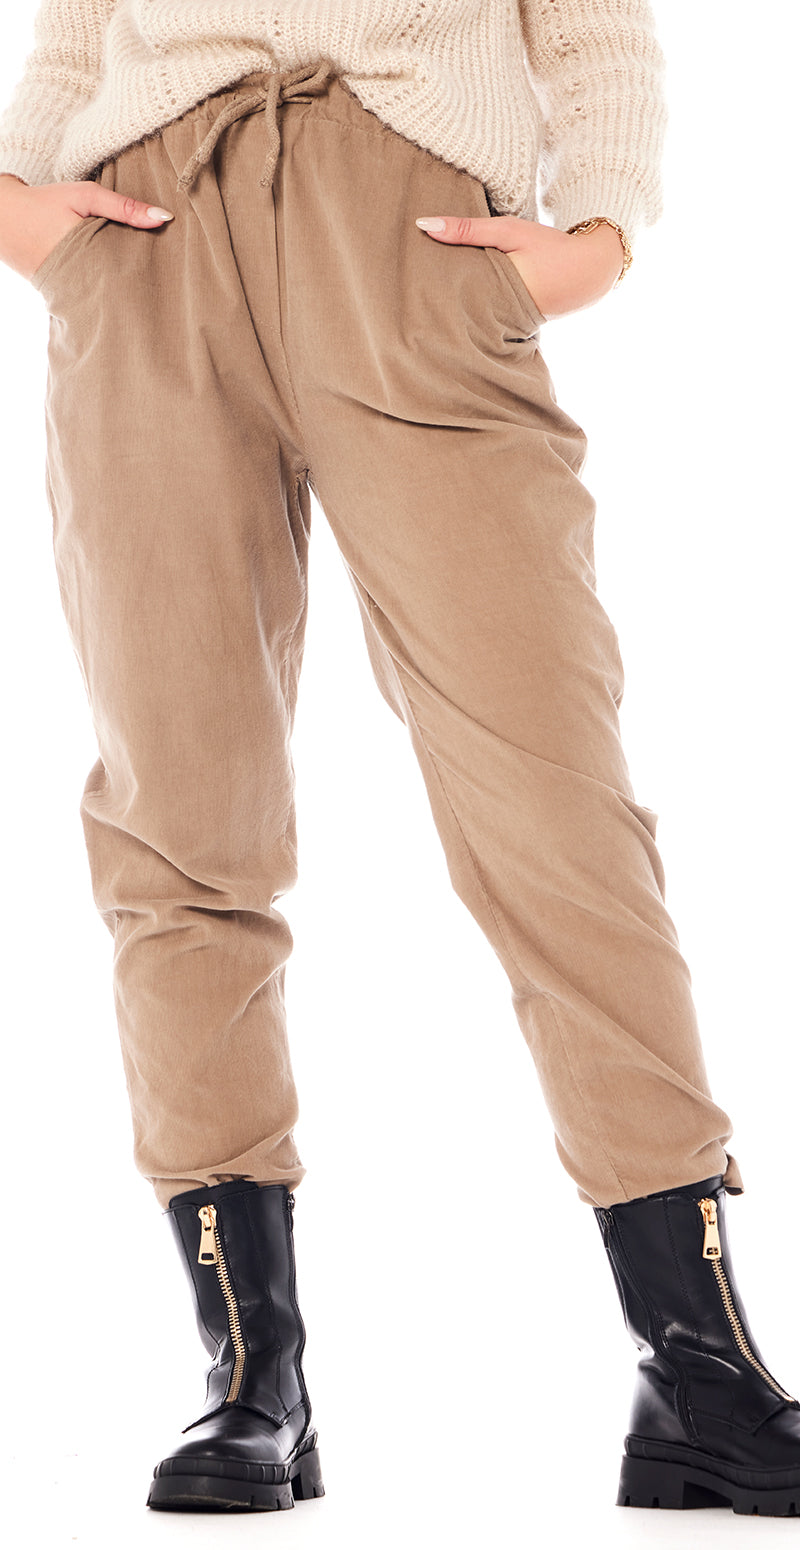 Bukser i med mocca Likelondon – LikeLondon.com